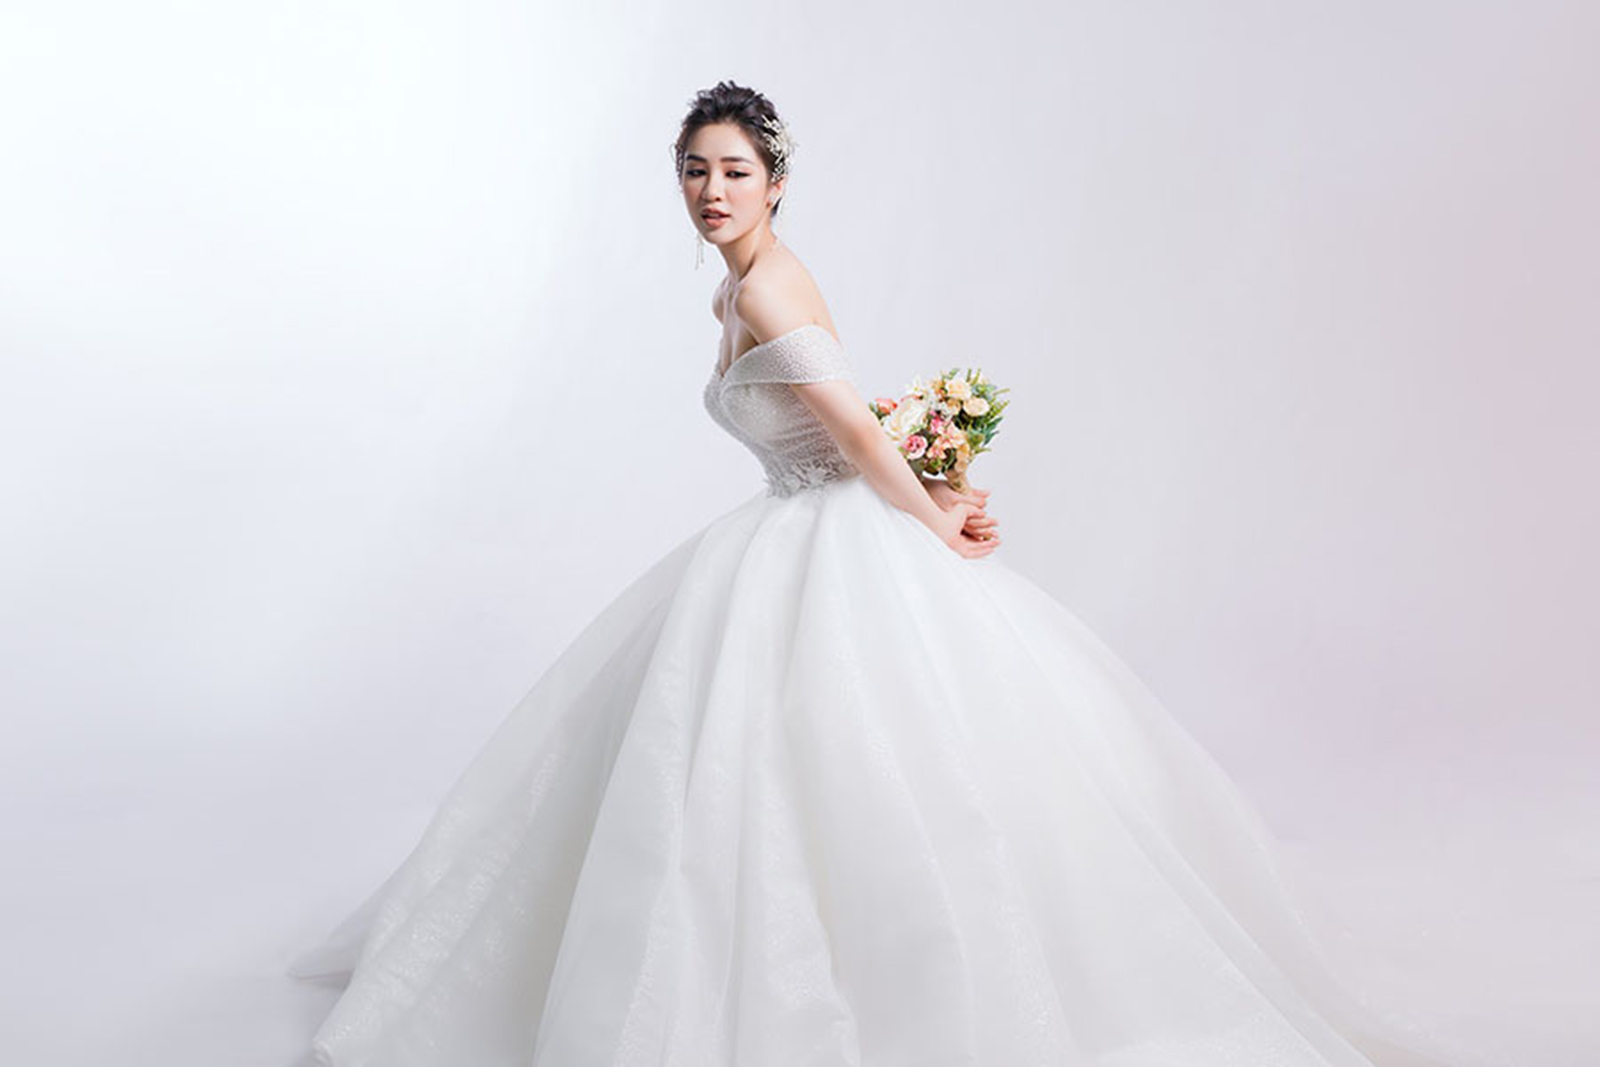 Địa chỉ các tiệm váy cưới được ưa chuộng tại Hà Nội  Quyên Nguyễn